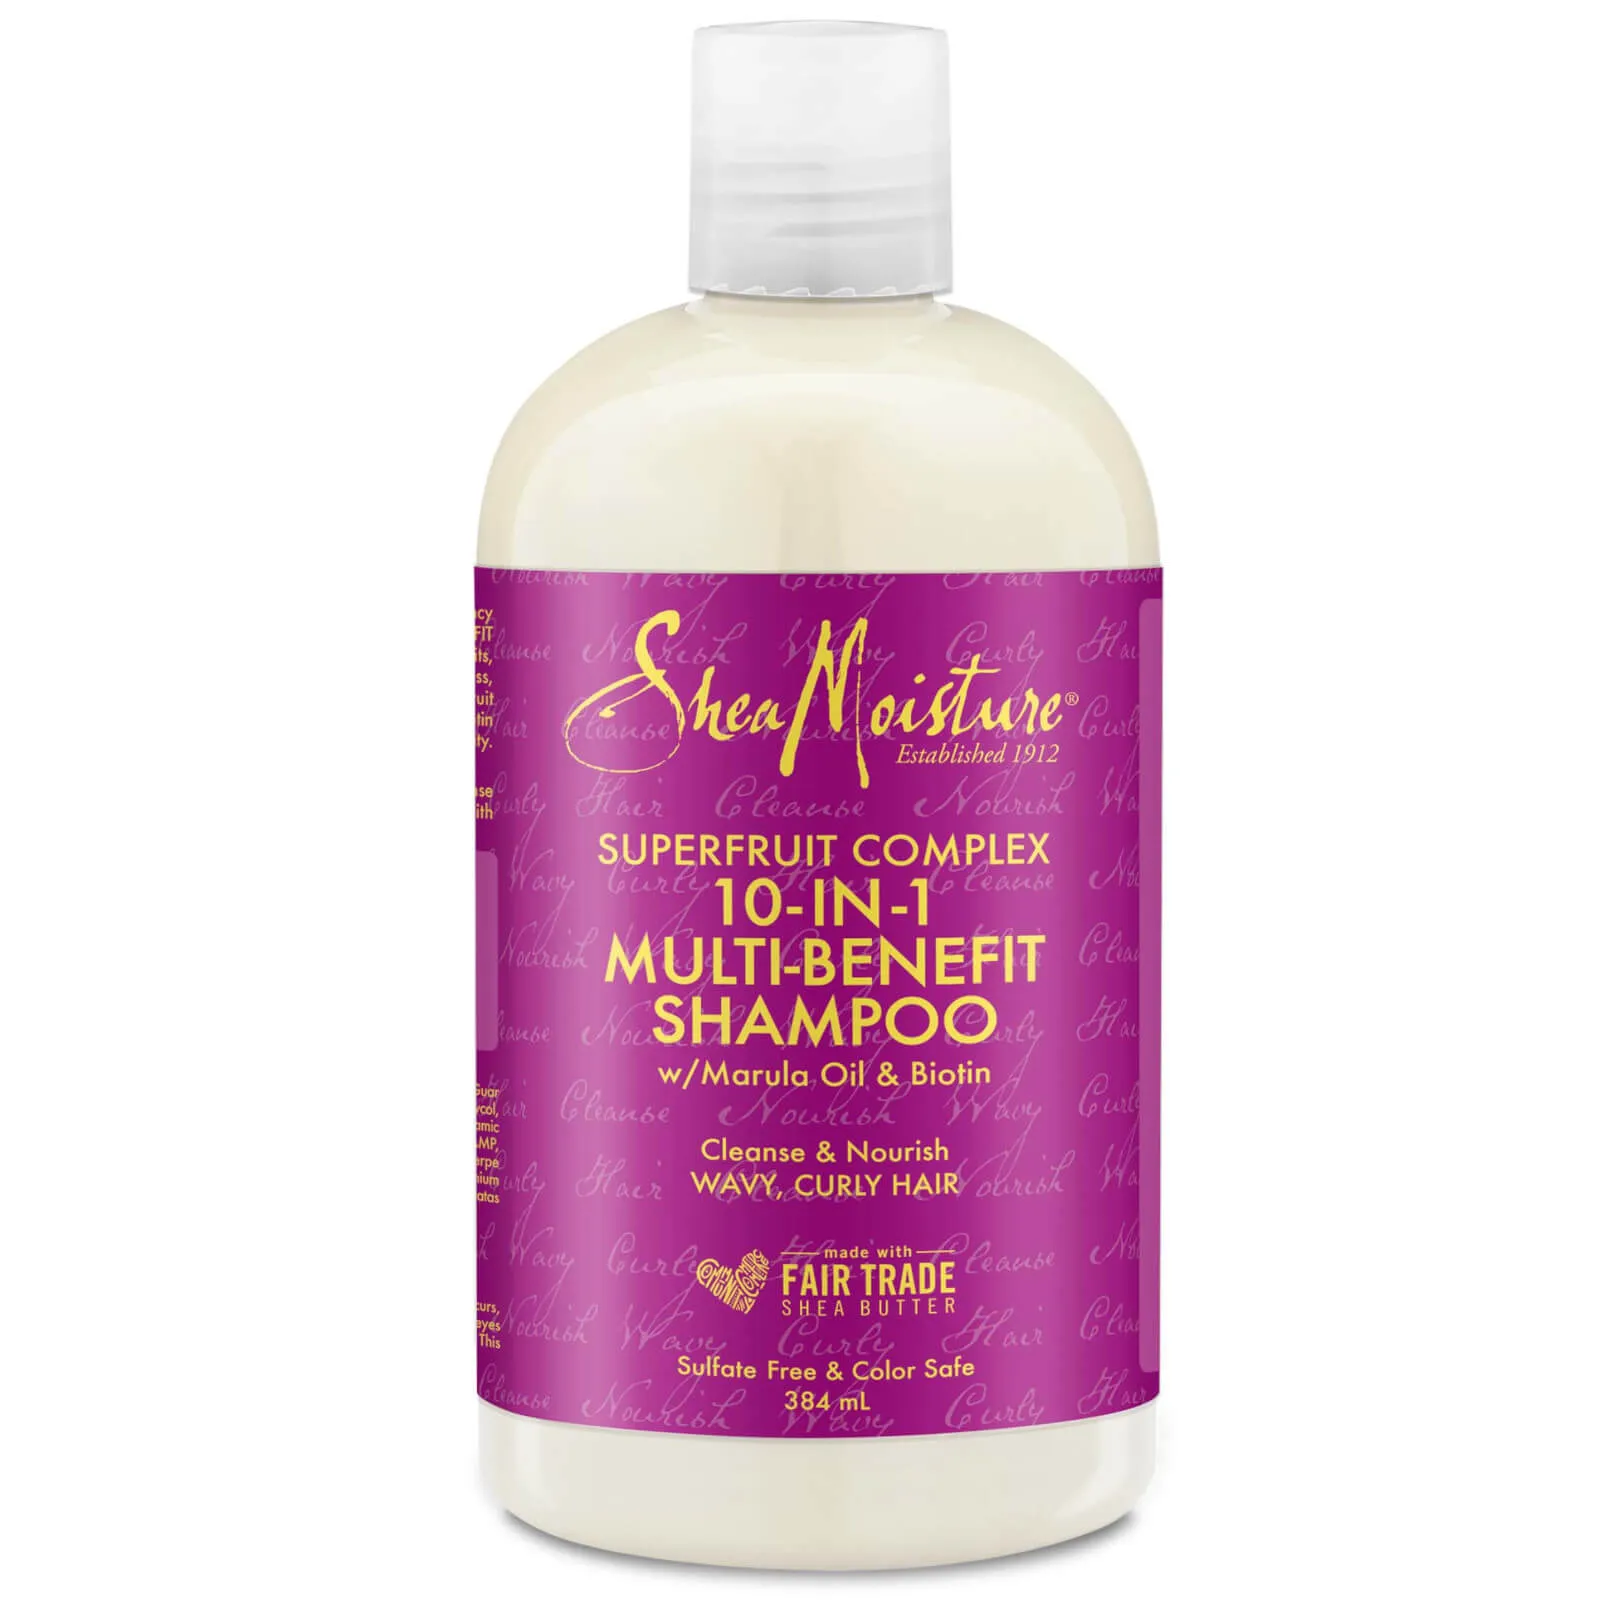 Shea Moisture complesso rinnovatore ai super frutti 10 in 1 shampoo 379 ml